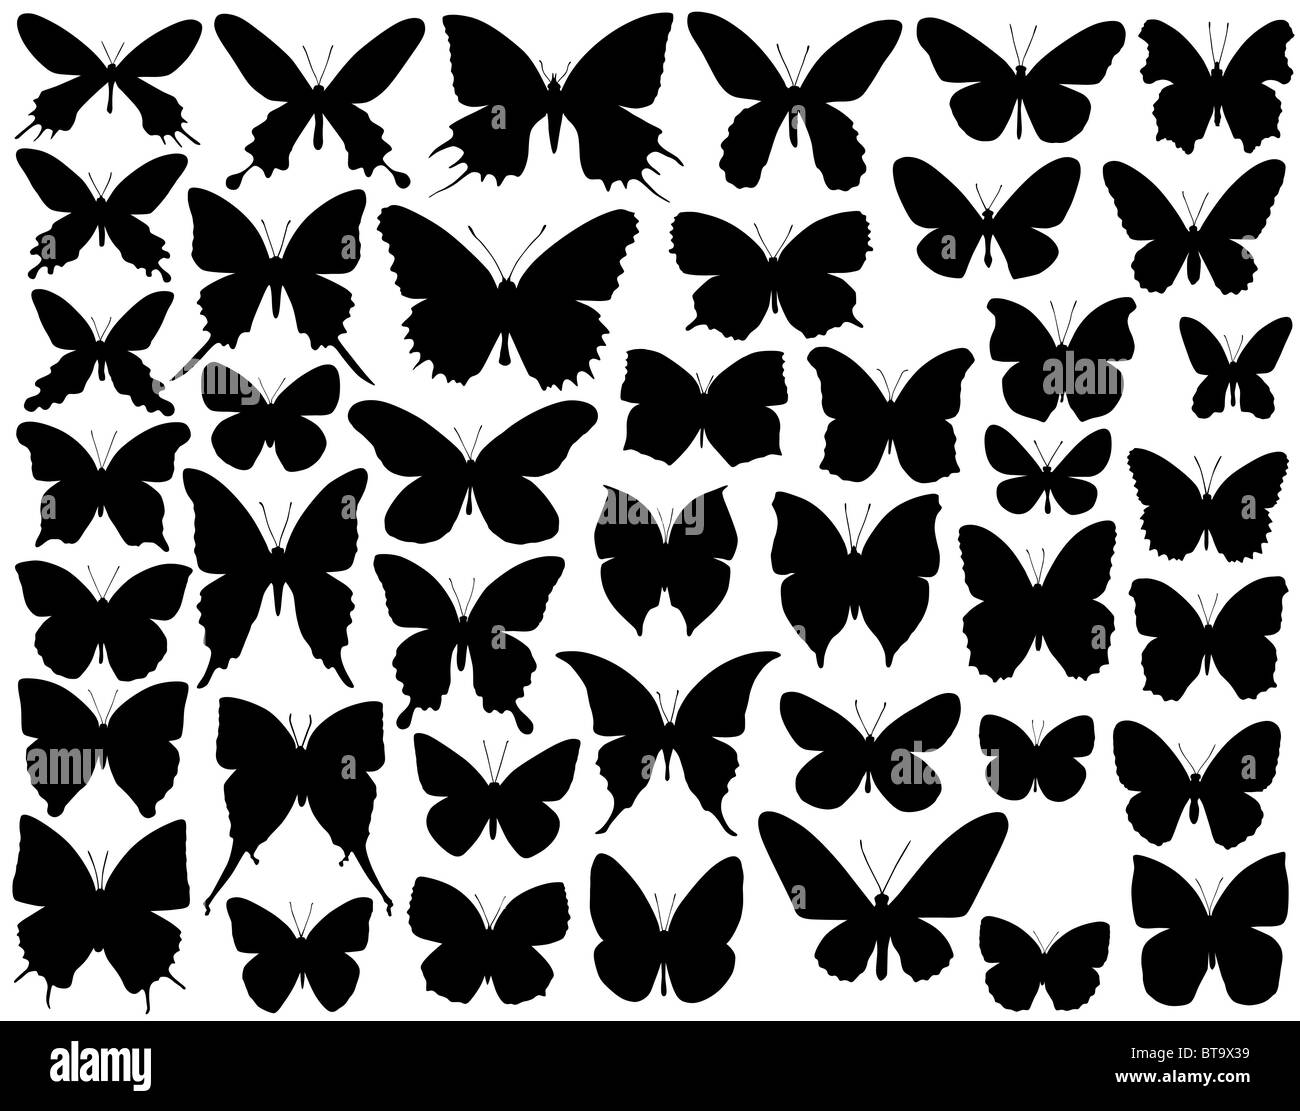 Auswahl an illustrierten Schmetterling Umrisse und Silhouetten Stockfoto